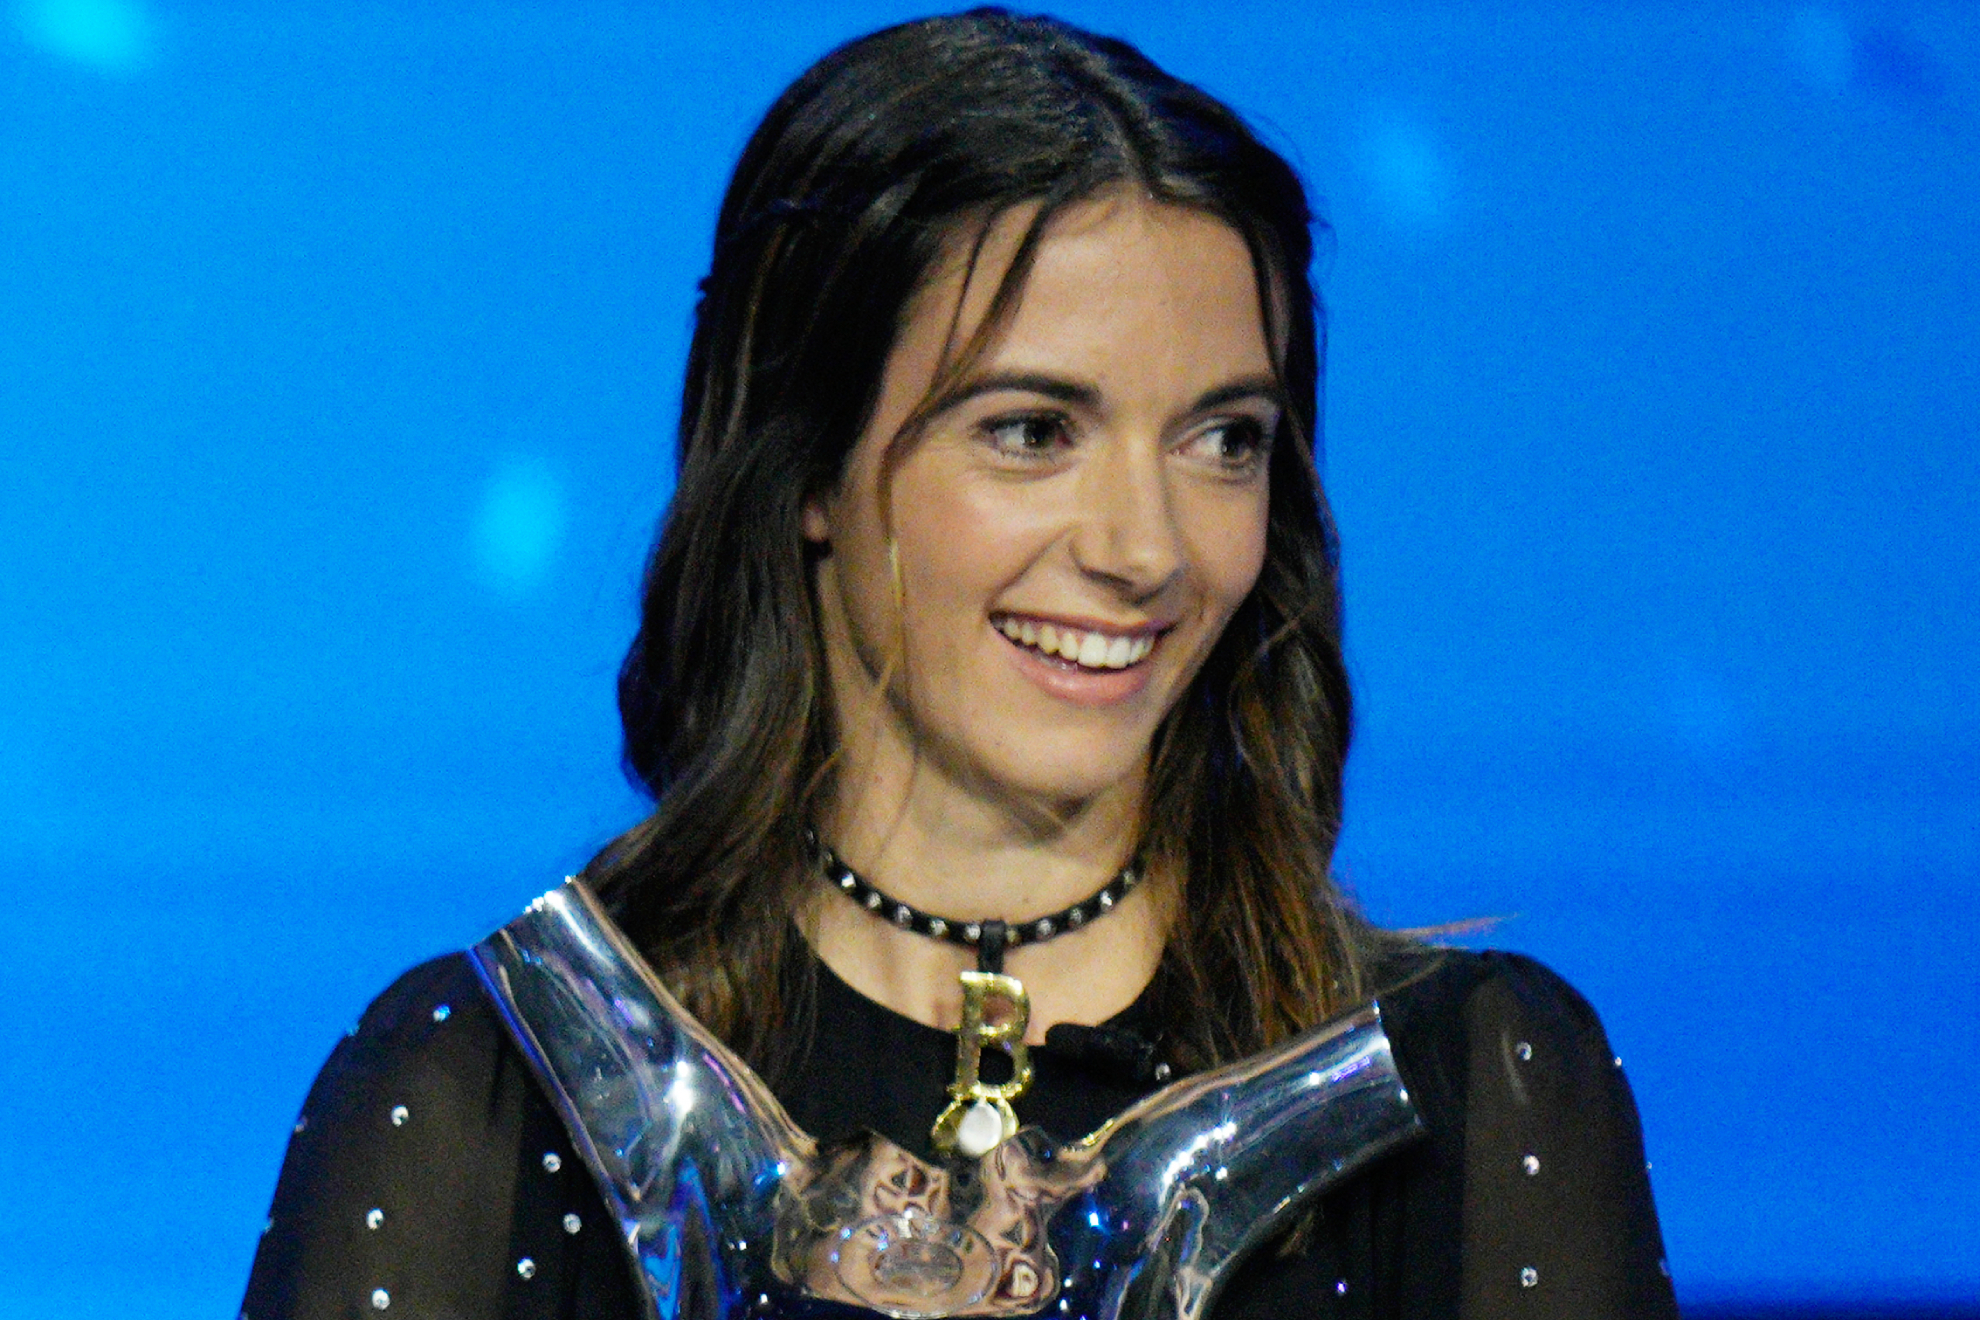 Aitana Bonmat� al recoger el premio a 'Mejor Jugadora' para la UEFA / LaPresse